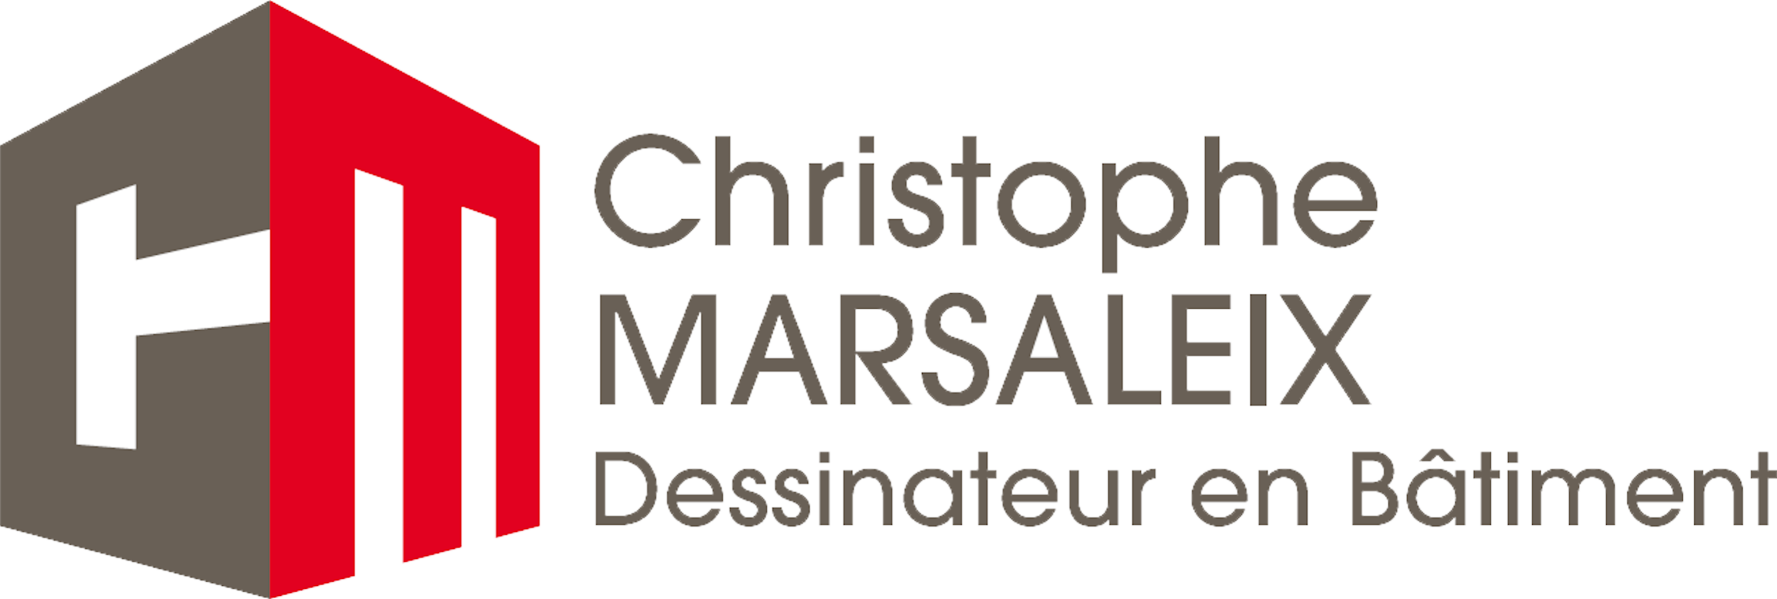 PAU DIGITAL FACTORY partenaire de Christophe MArsaleix